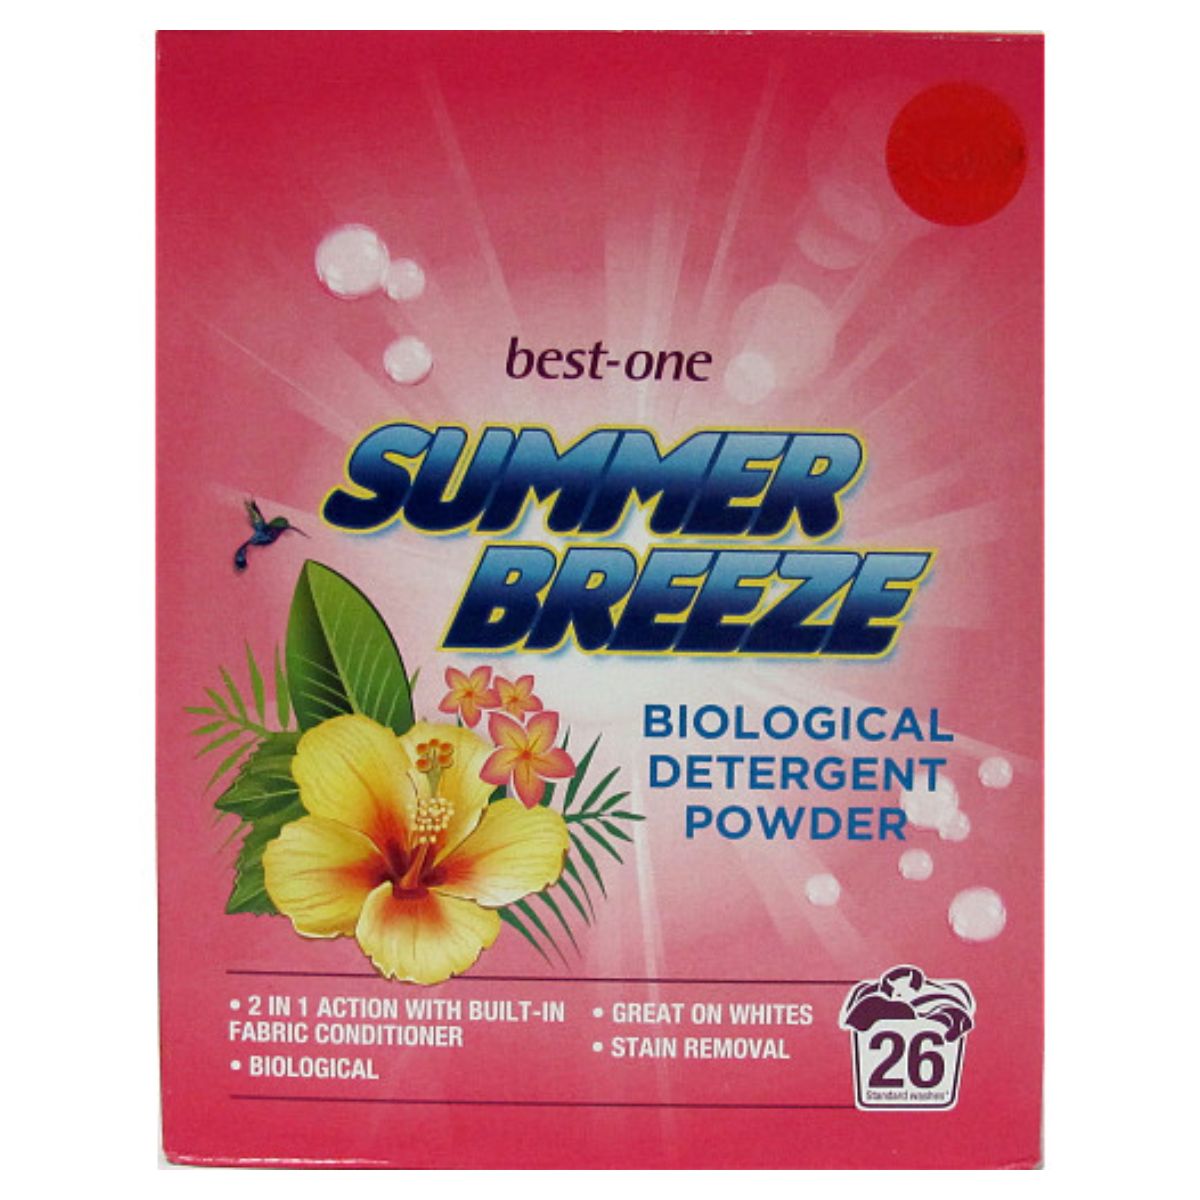 Best One - Summer Breeze Powder - 26washes is the best biodetergent powder for summer.